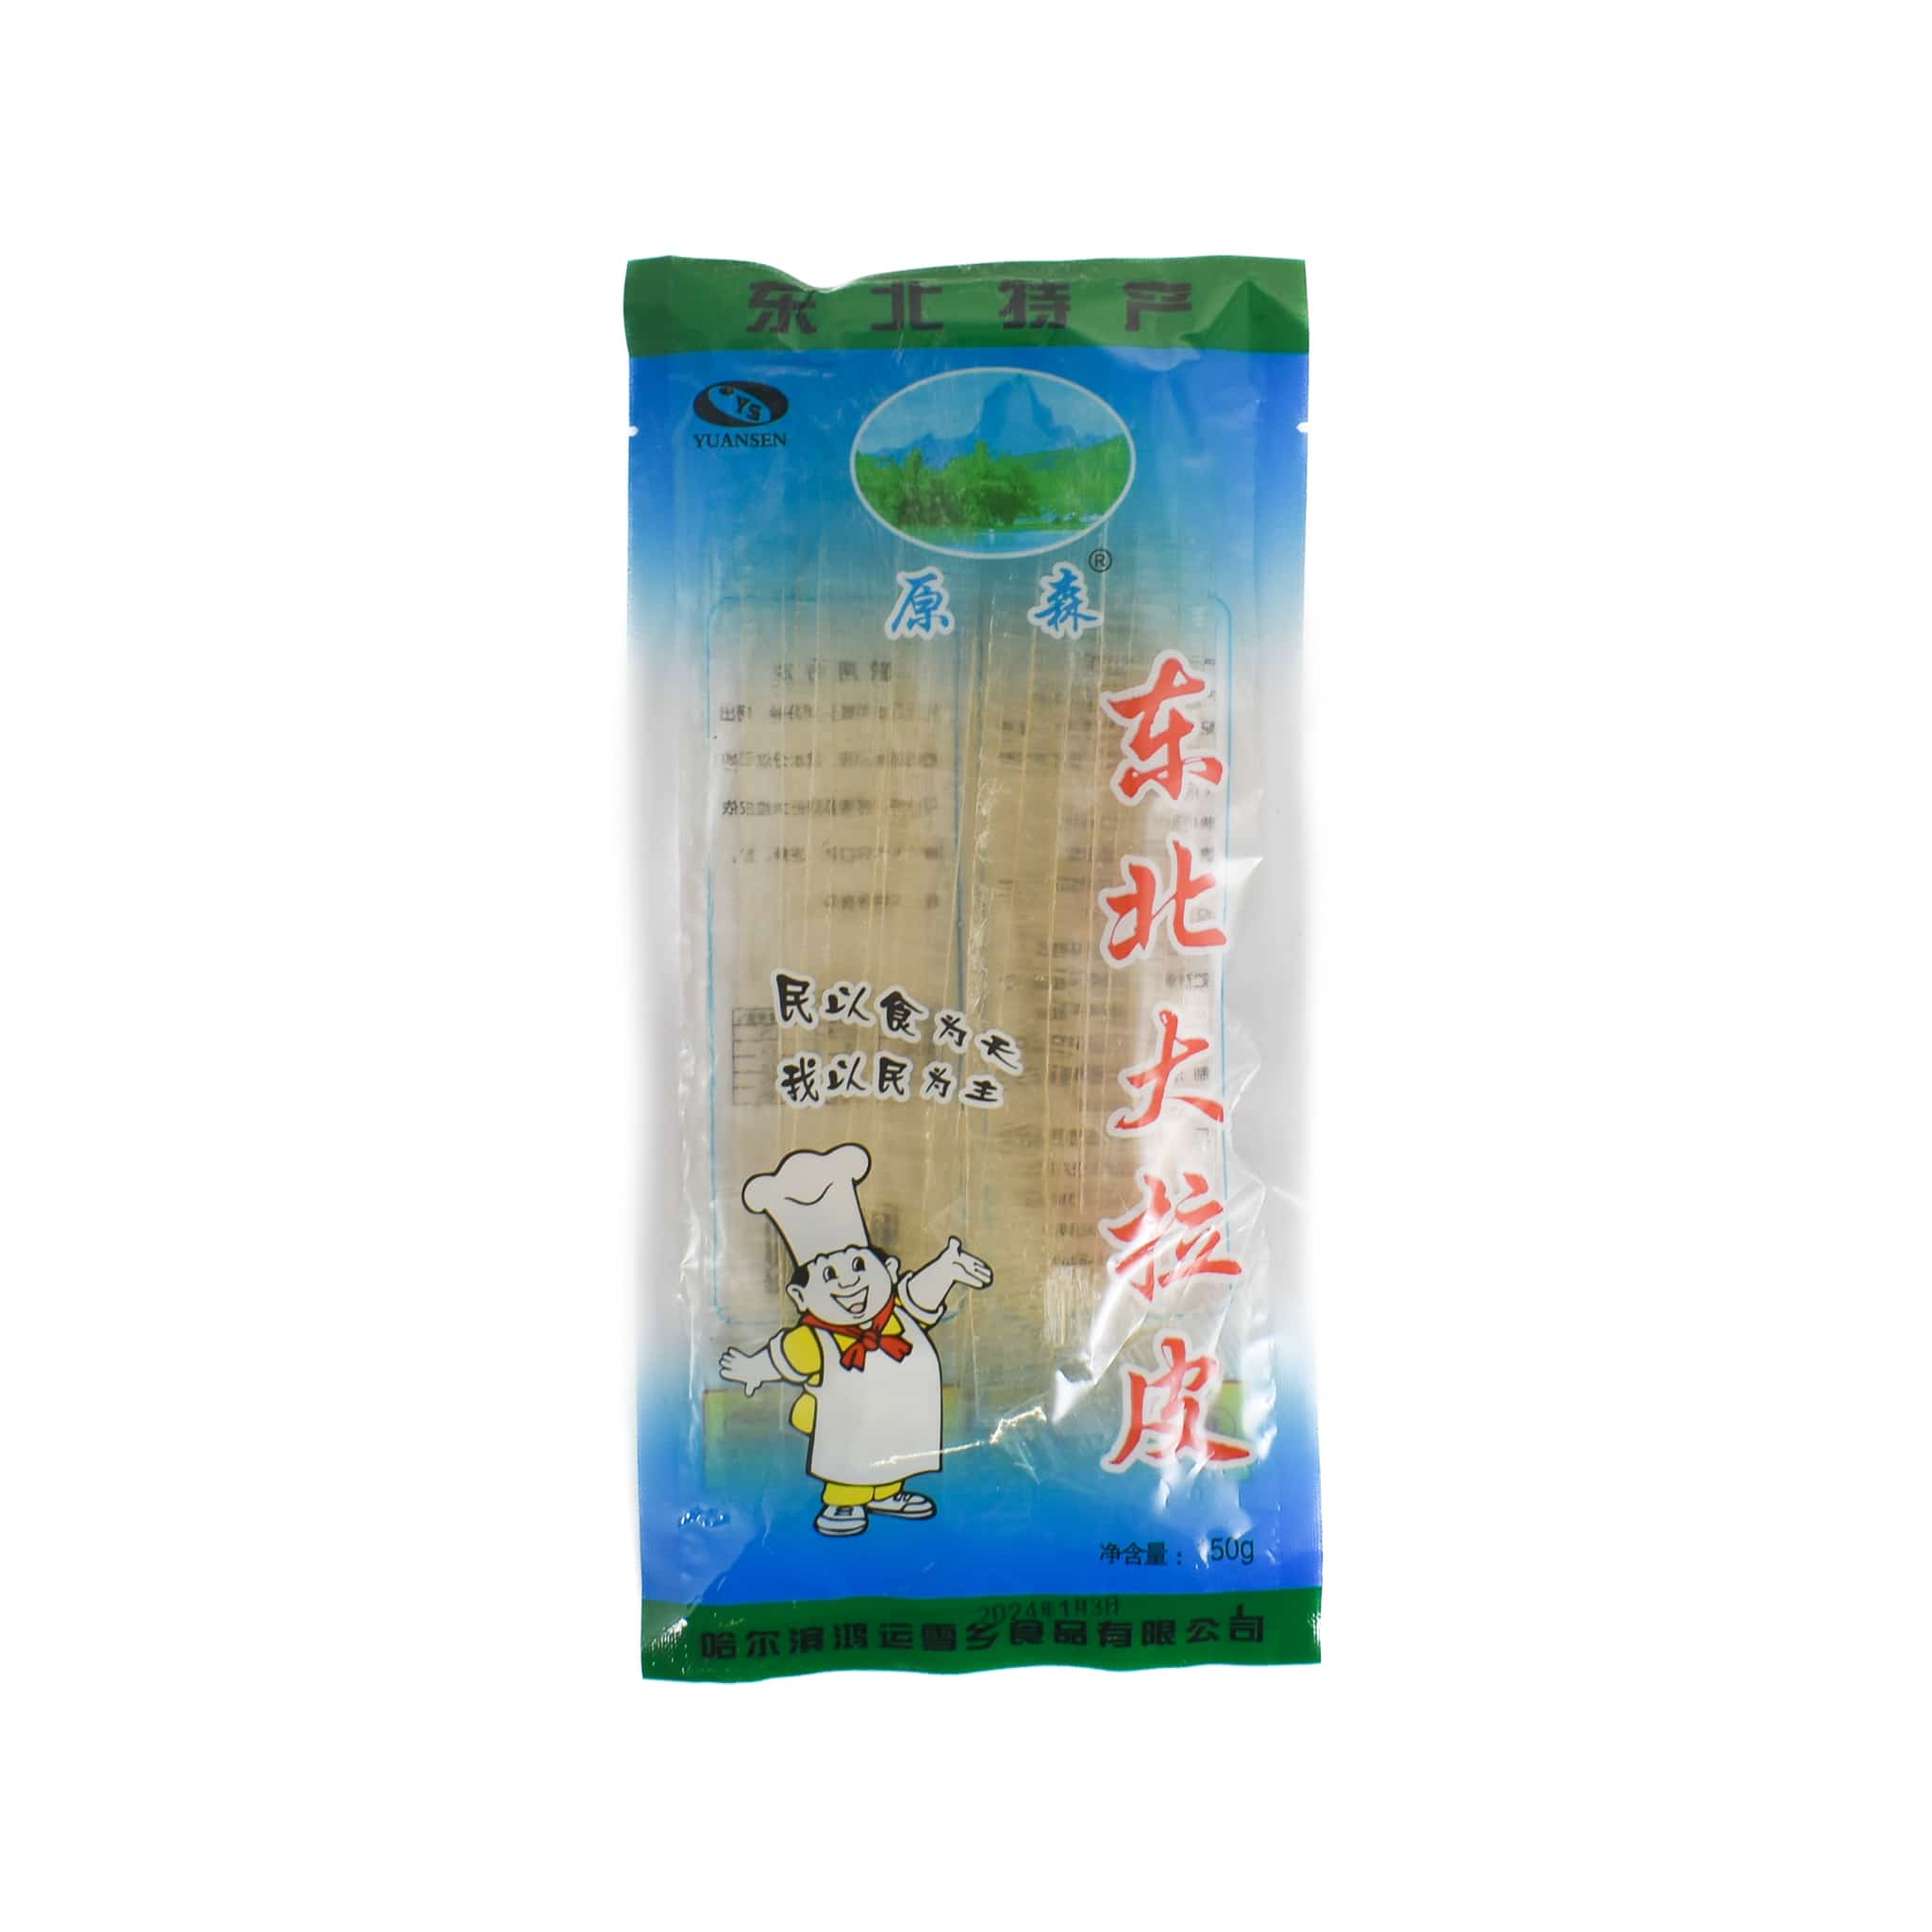 Yuansen Da La Pi Potato Vermicelli Noodles, 150g